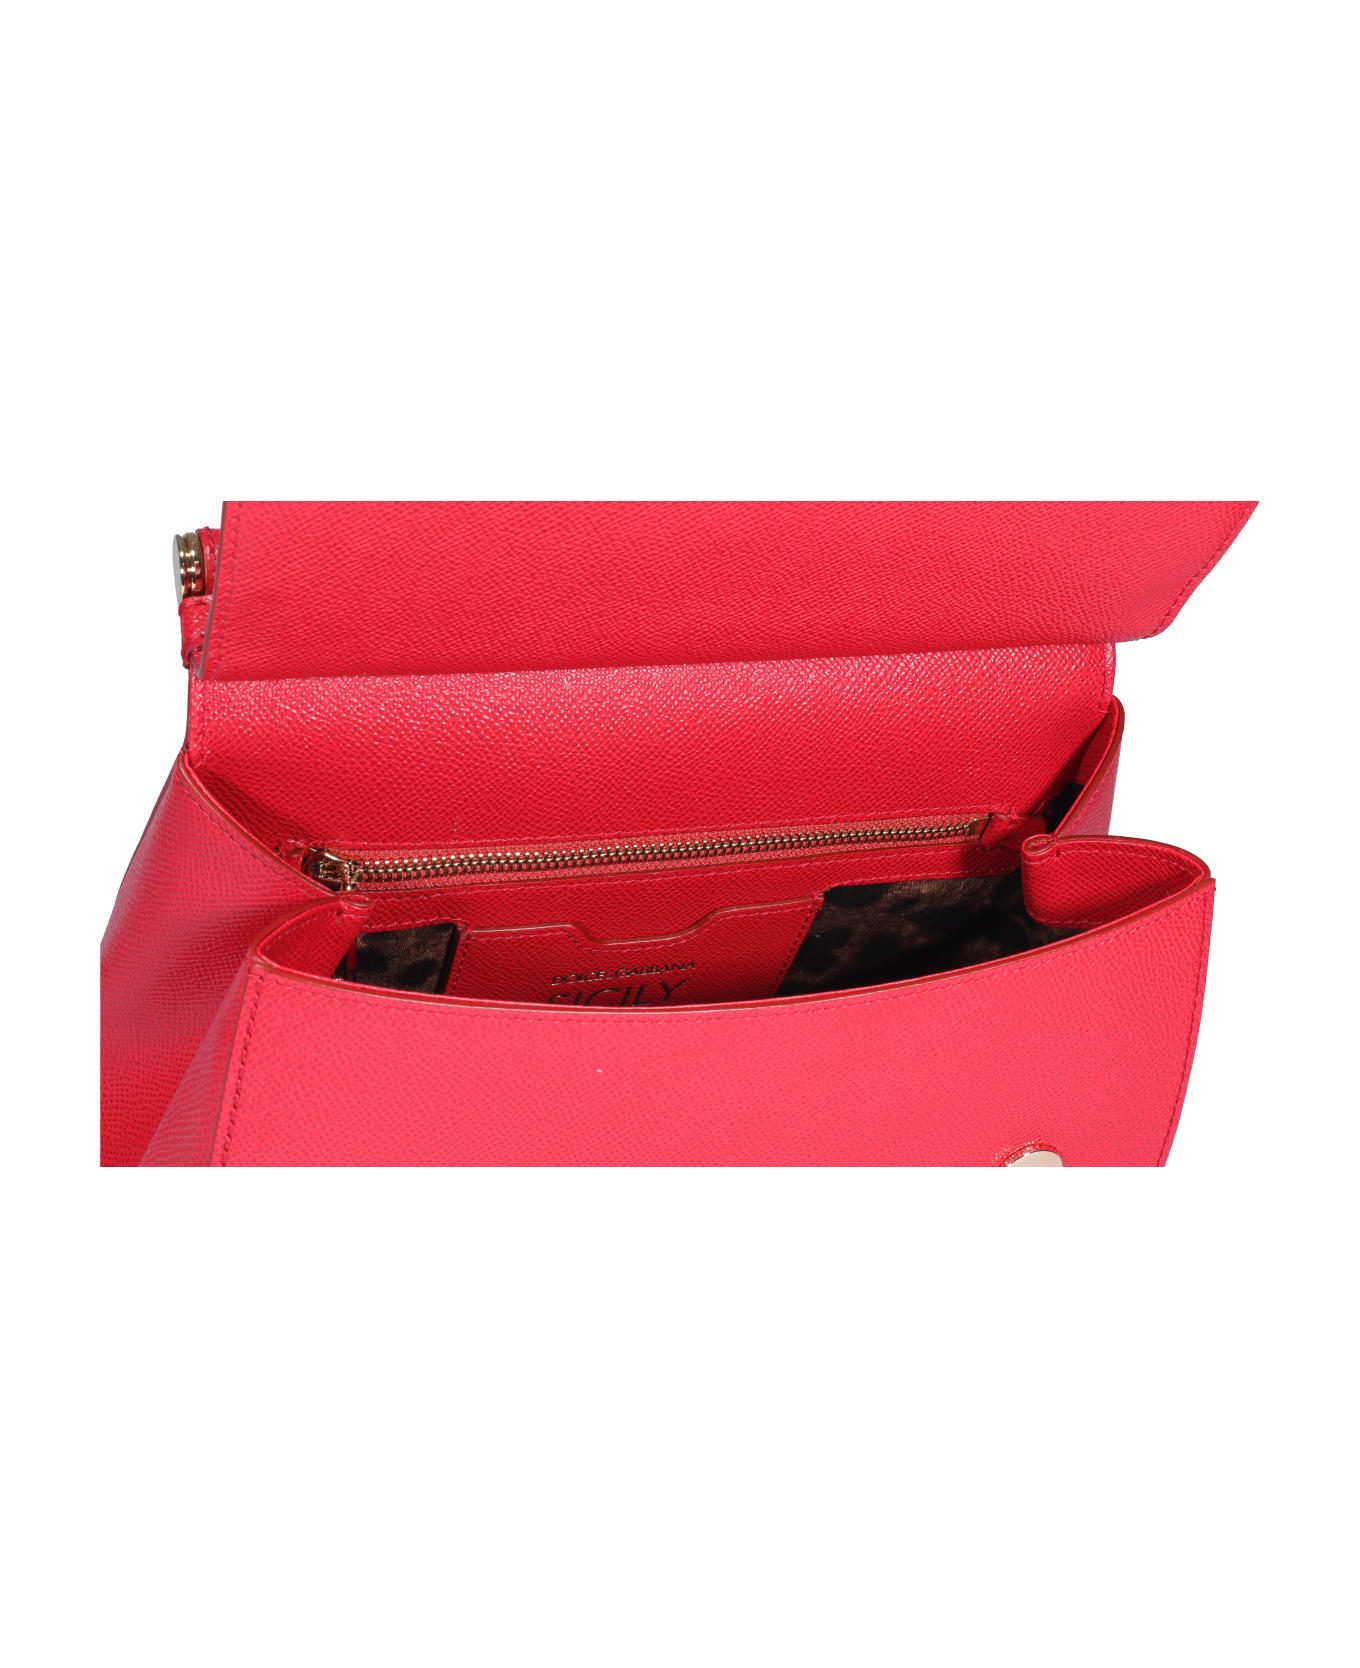 Dolce & Gabbana Sicily Medium Hand Bag - Rosso